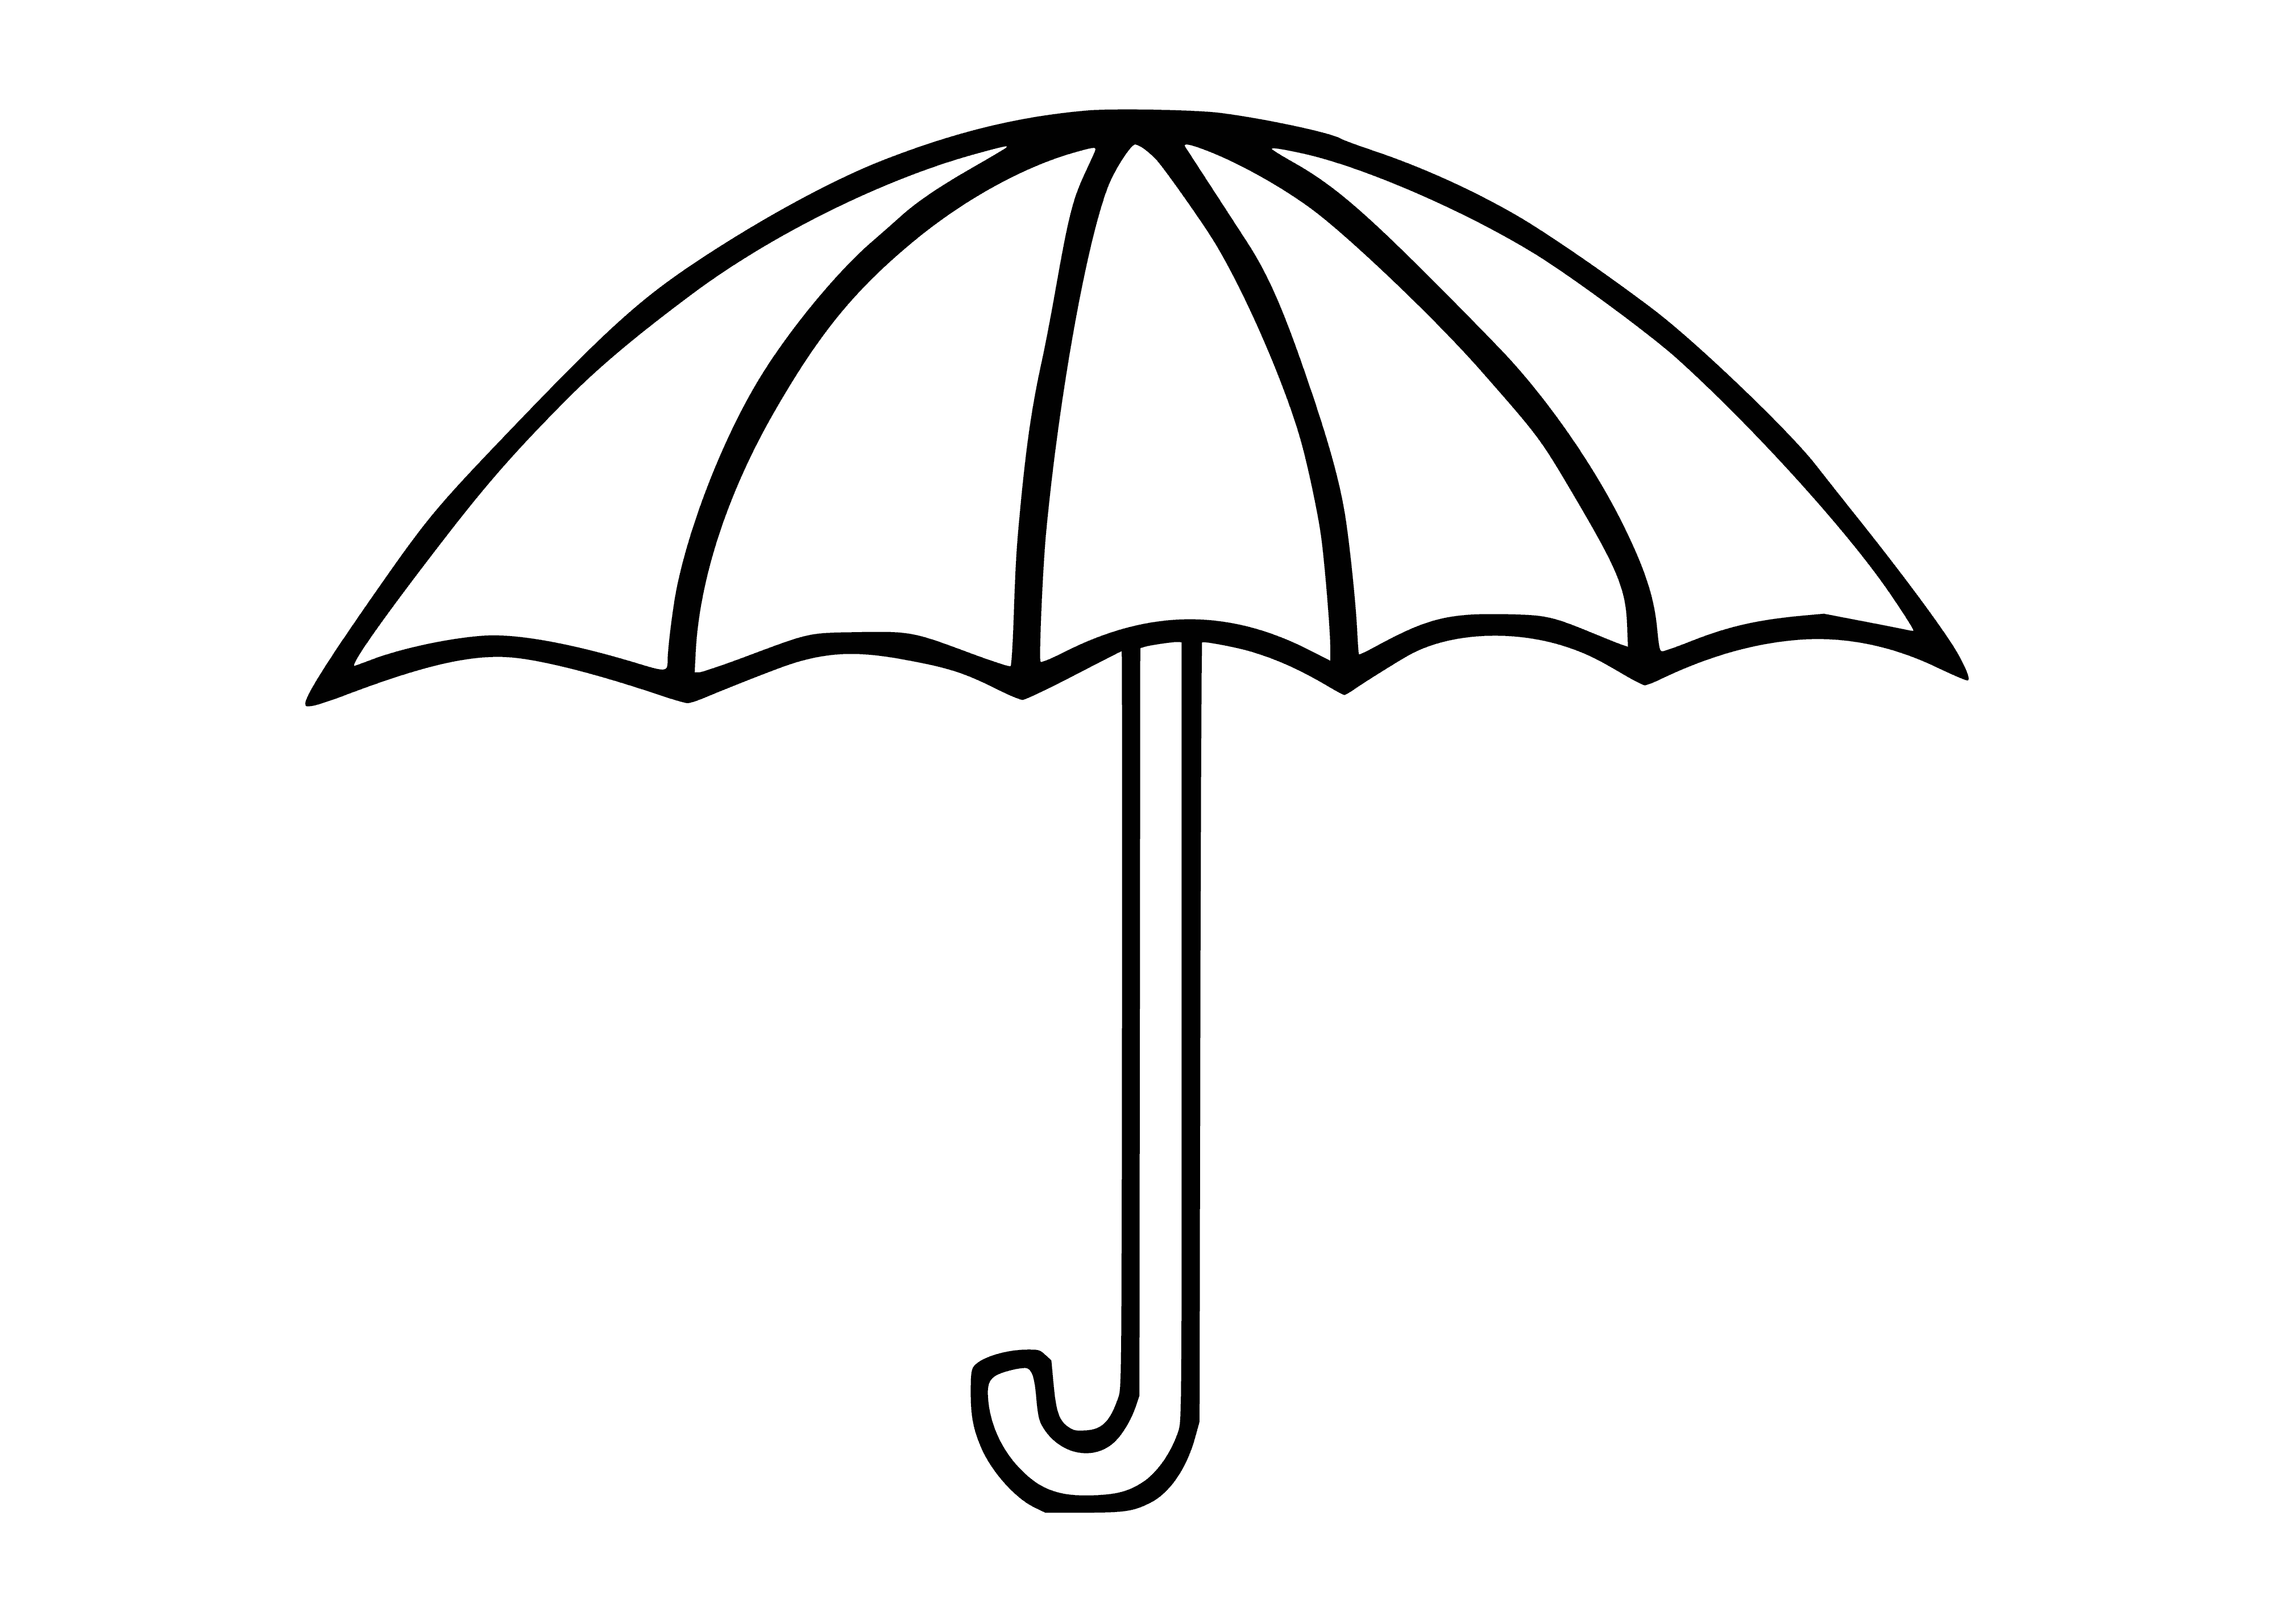 Umbrella coloring page